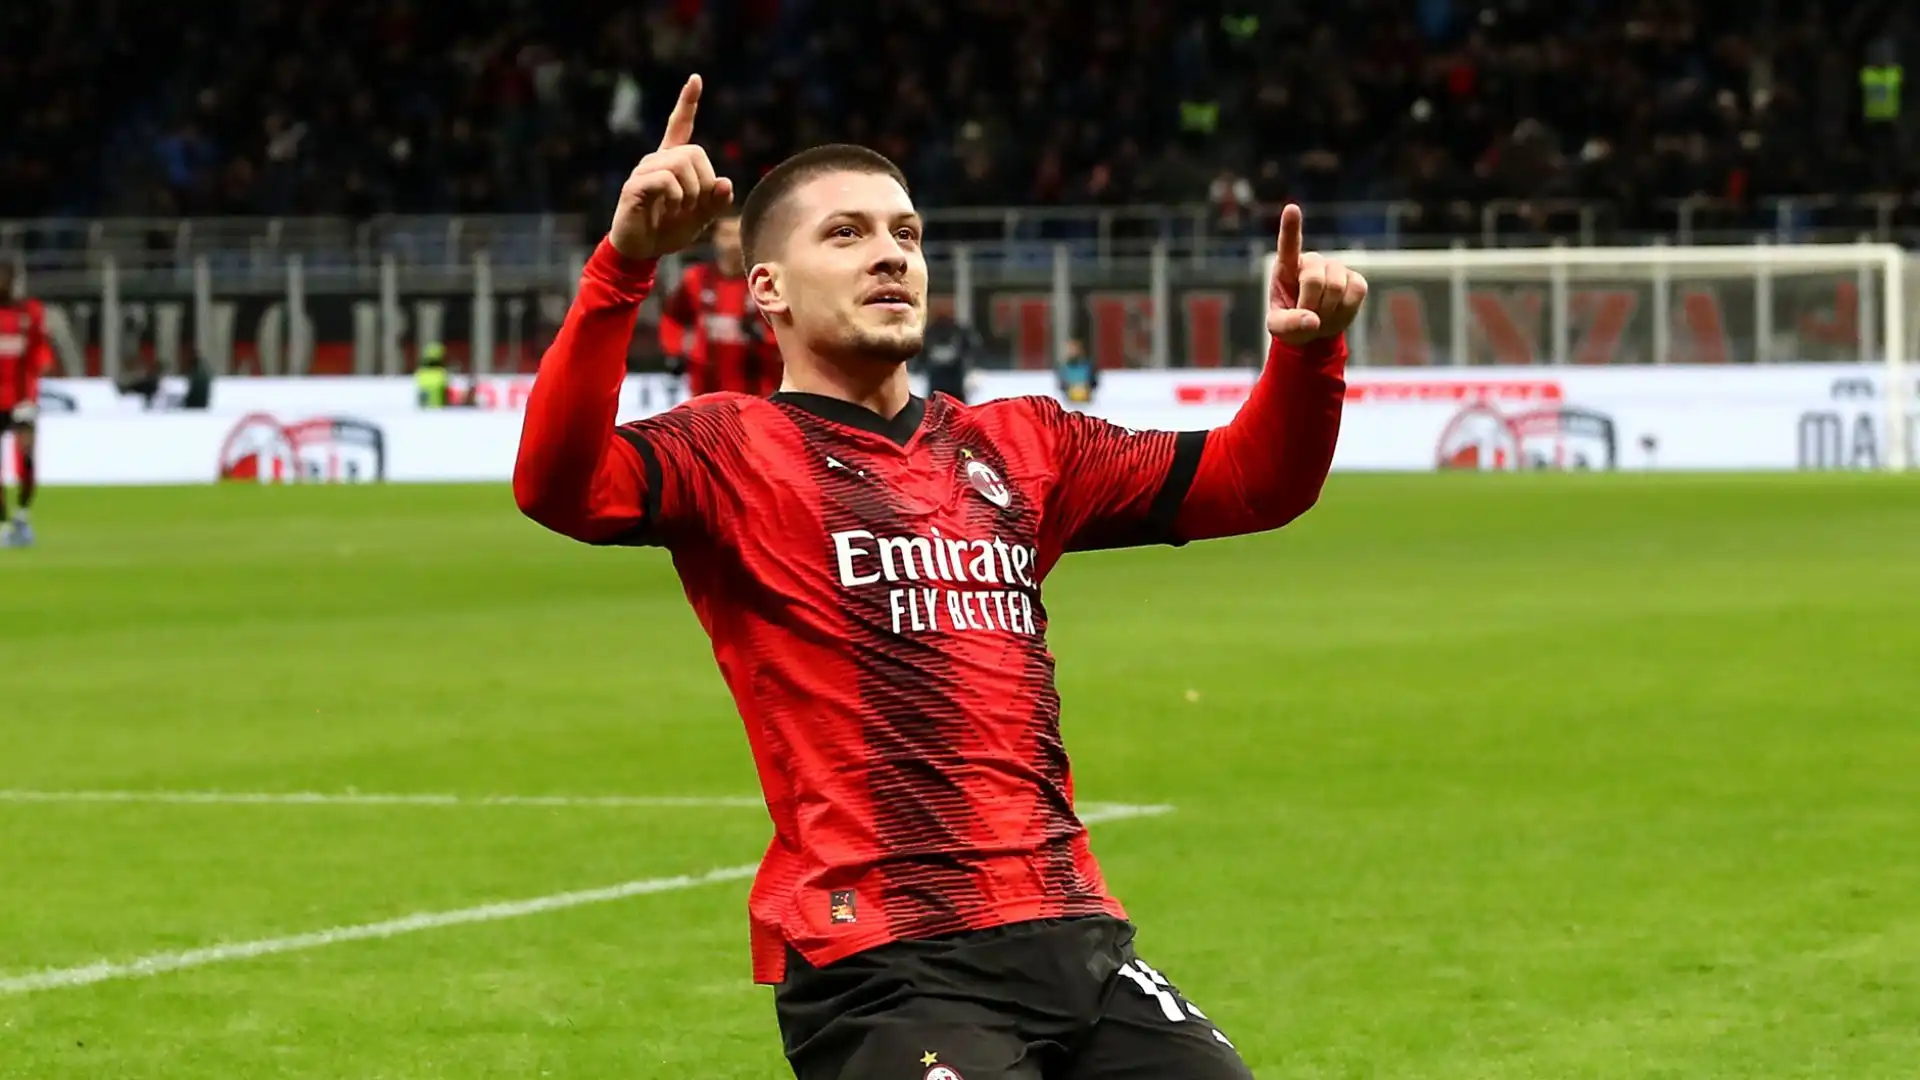 Il Milan avrebbe l'intenzione di esercitare l’opzione unilaterale per il rinnovo dell’attaccante, riporta Tuttosport